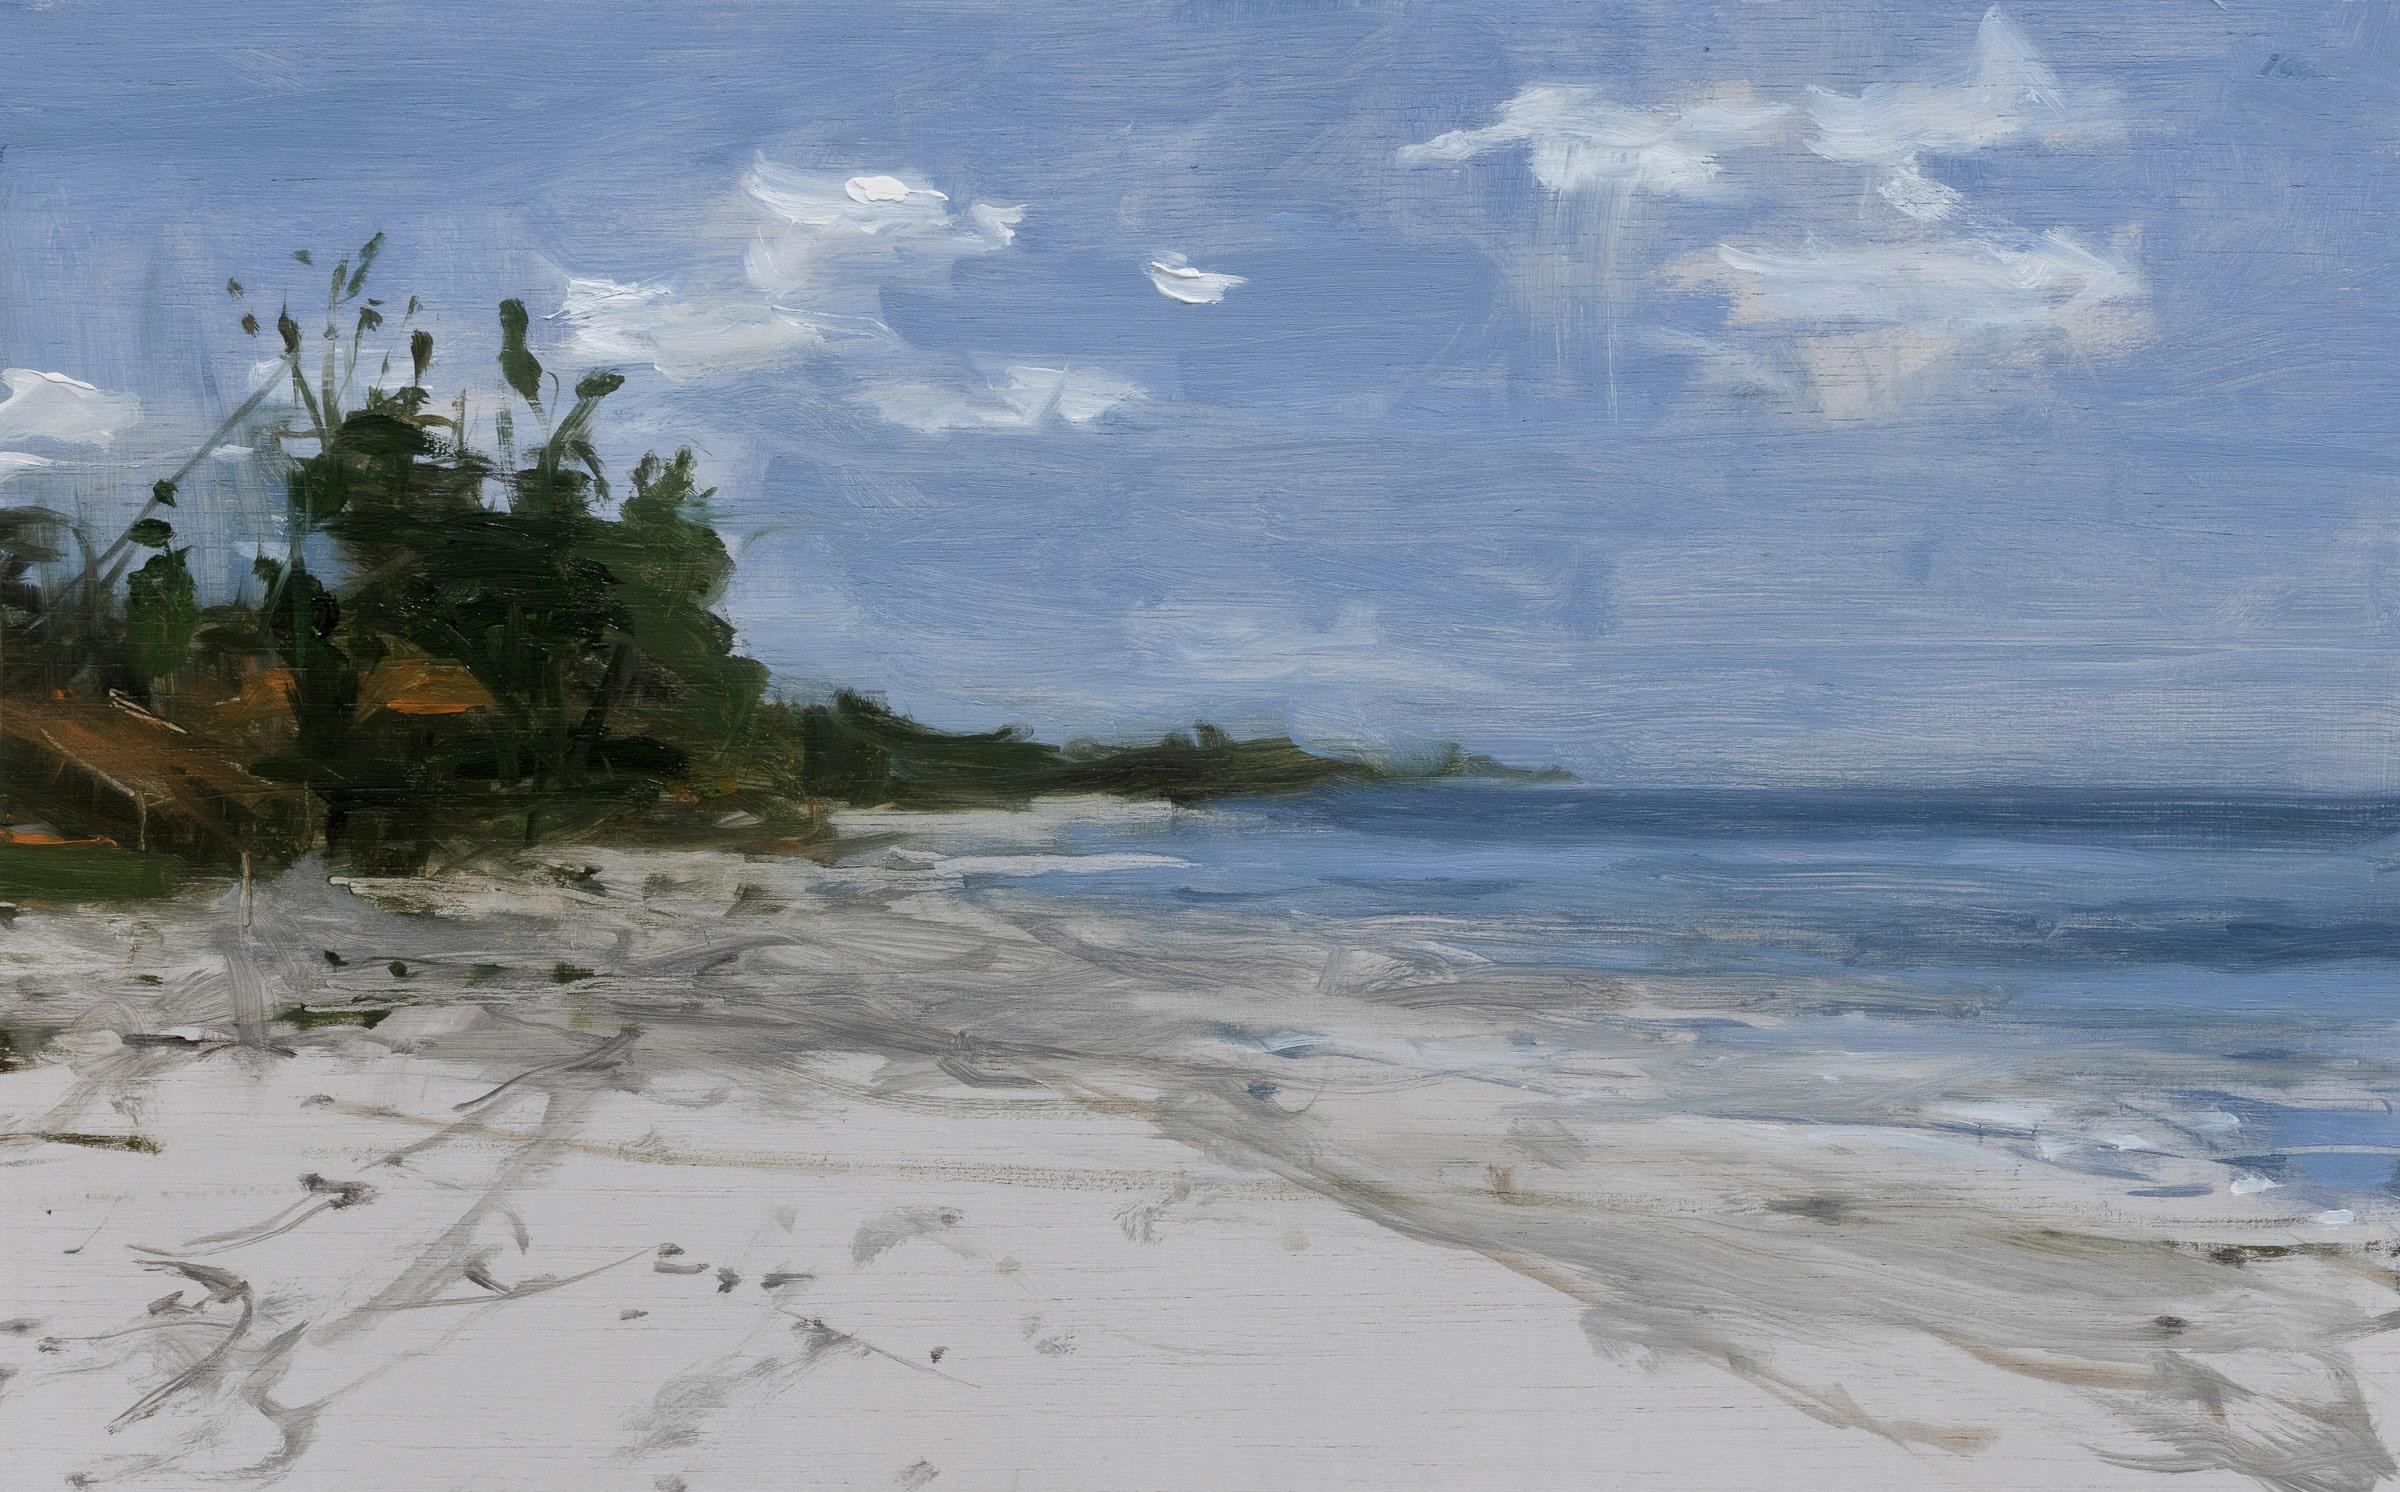 Marinas n°17 by Calo Carratalá - Contemporary Landscape Painting, Tanzania, sea